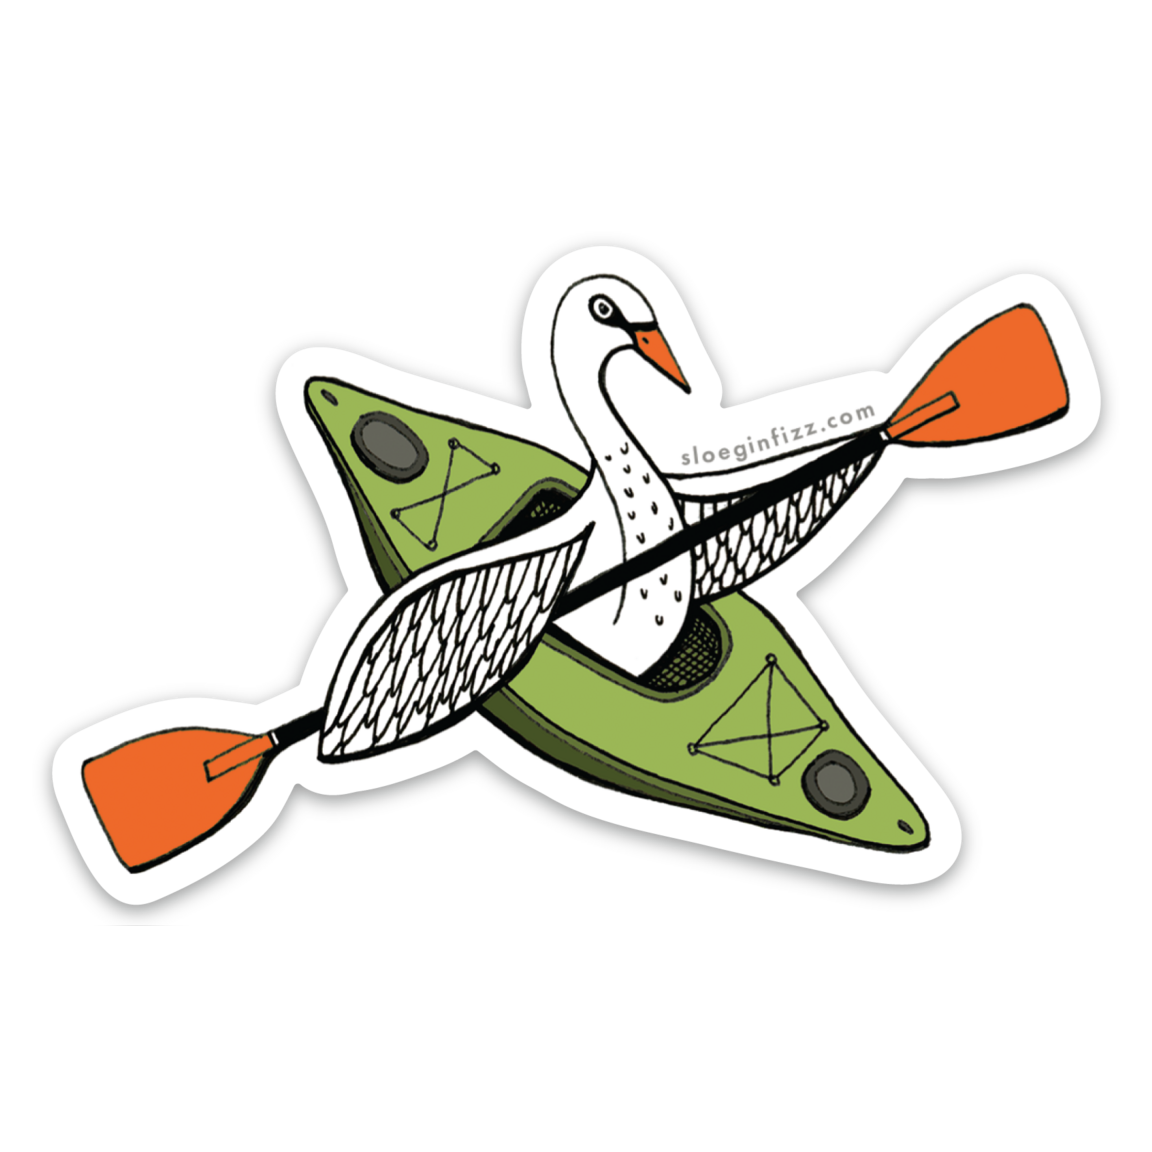 Swan in a Kayak Vinyl Sticker